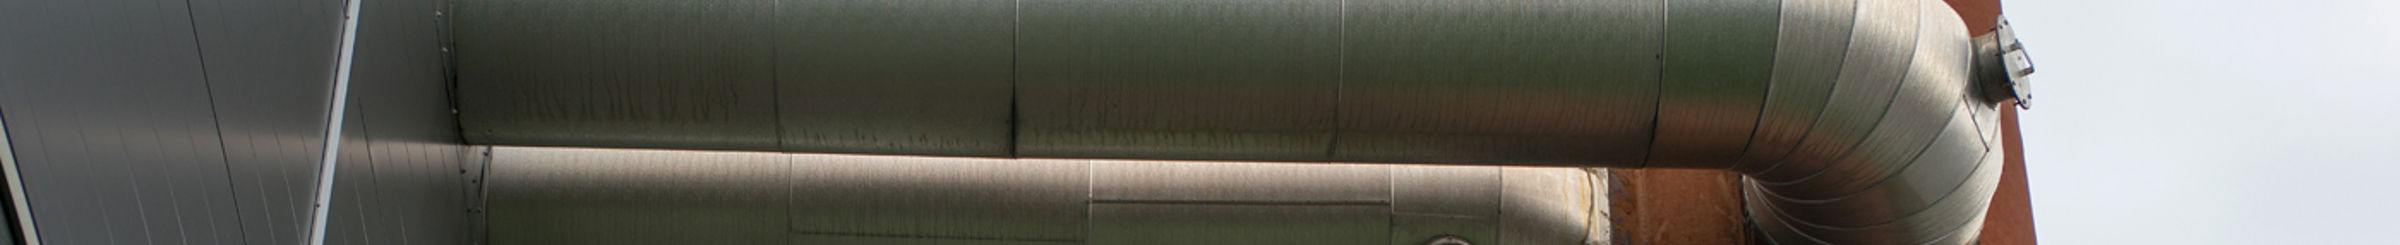 rør som går mellom et metallplatebygg og et rør med rustfarge